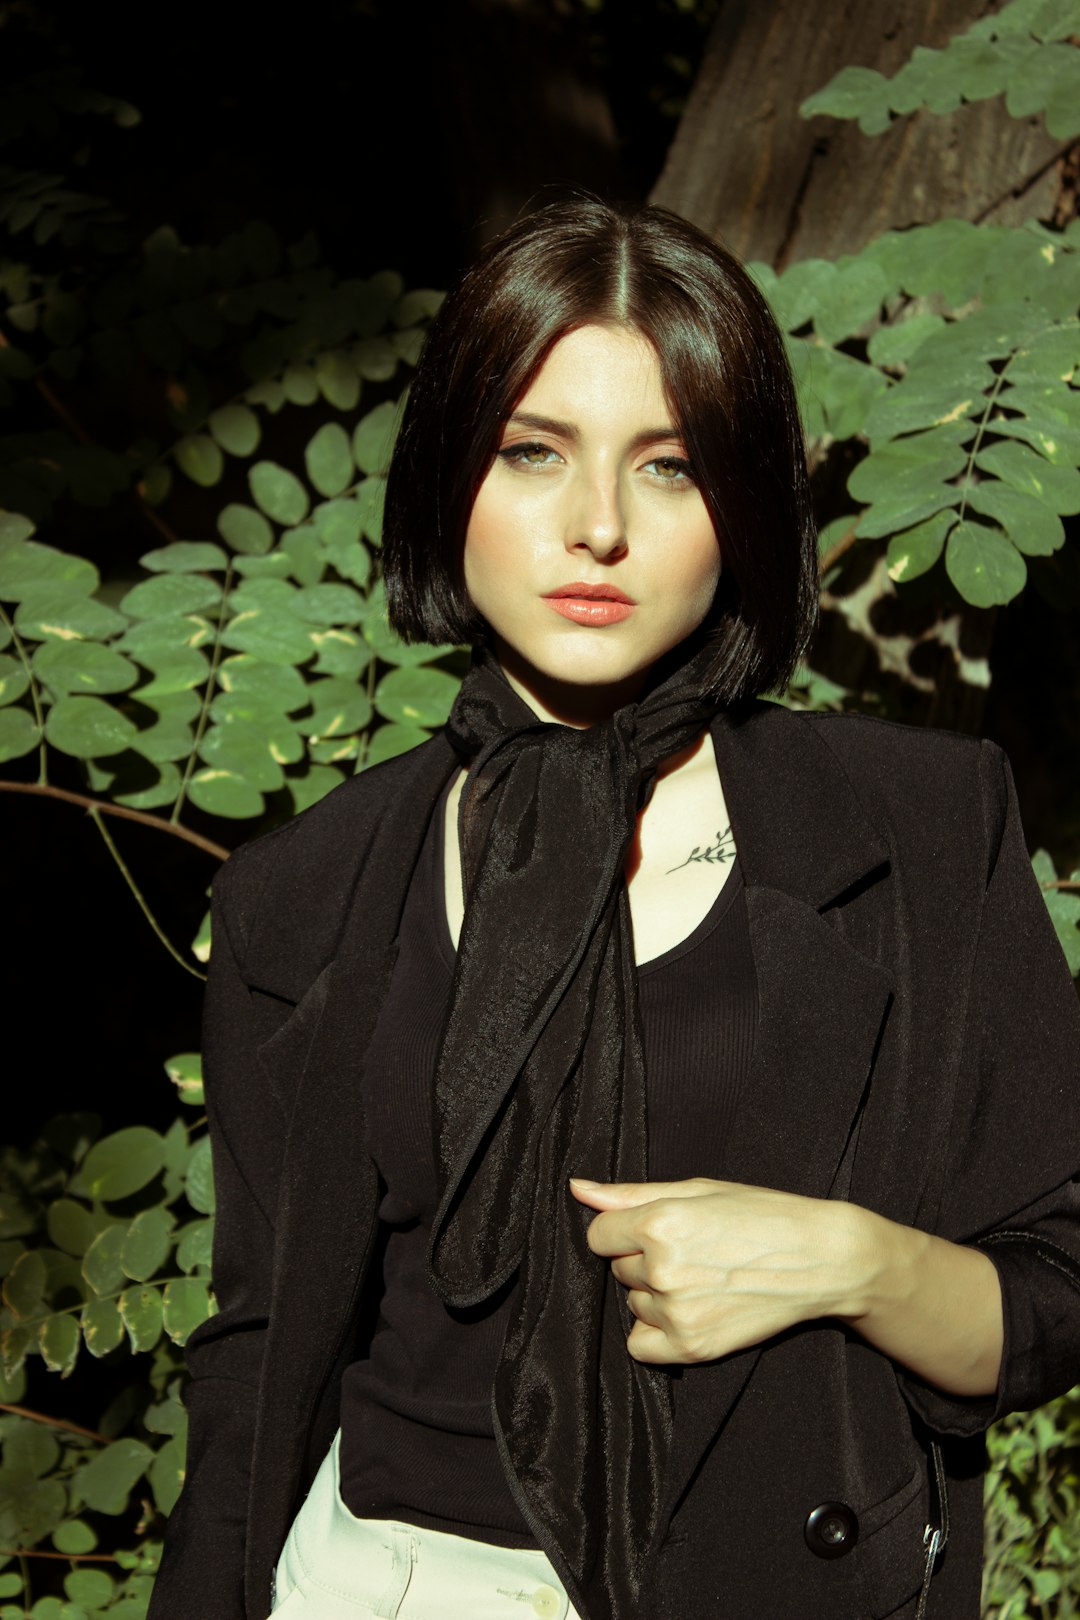 woman in black blazer standing near green leaves